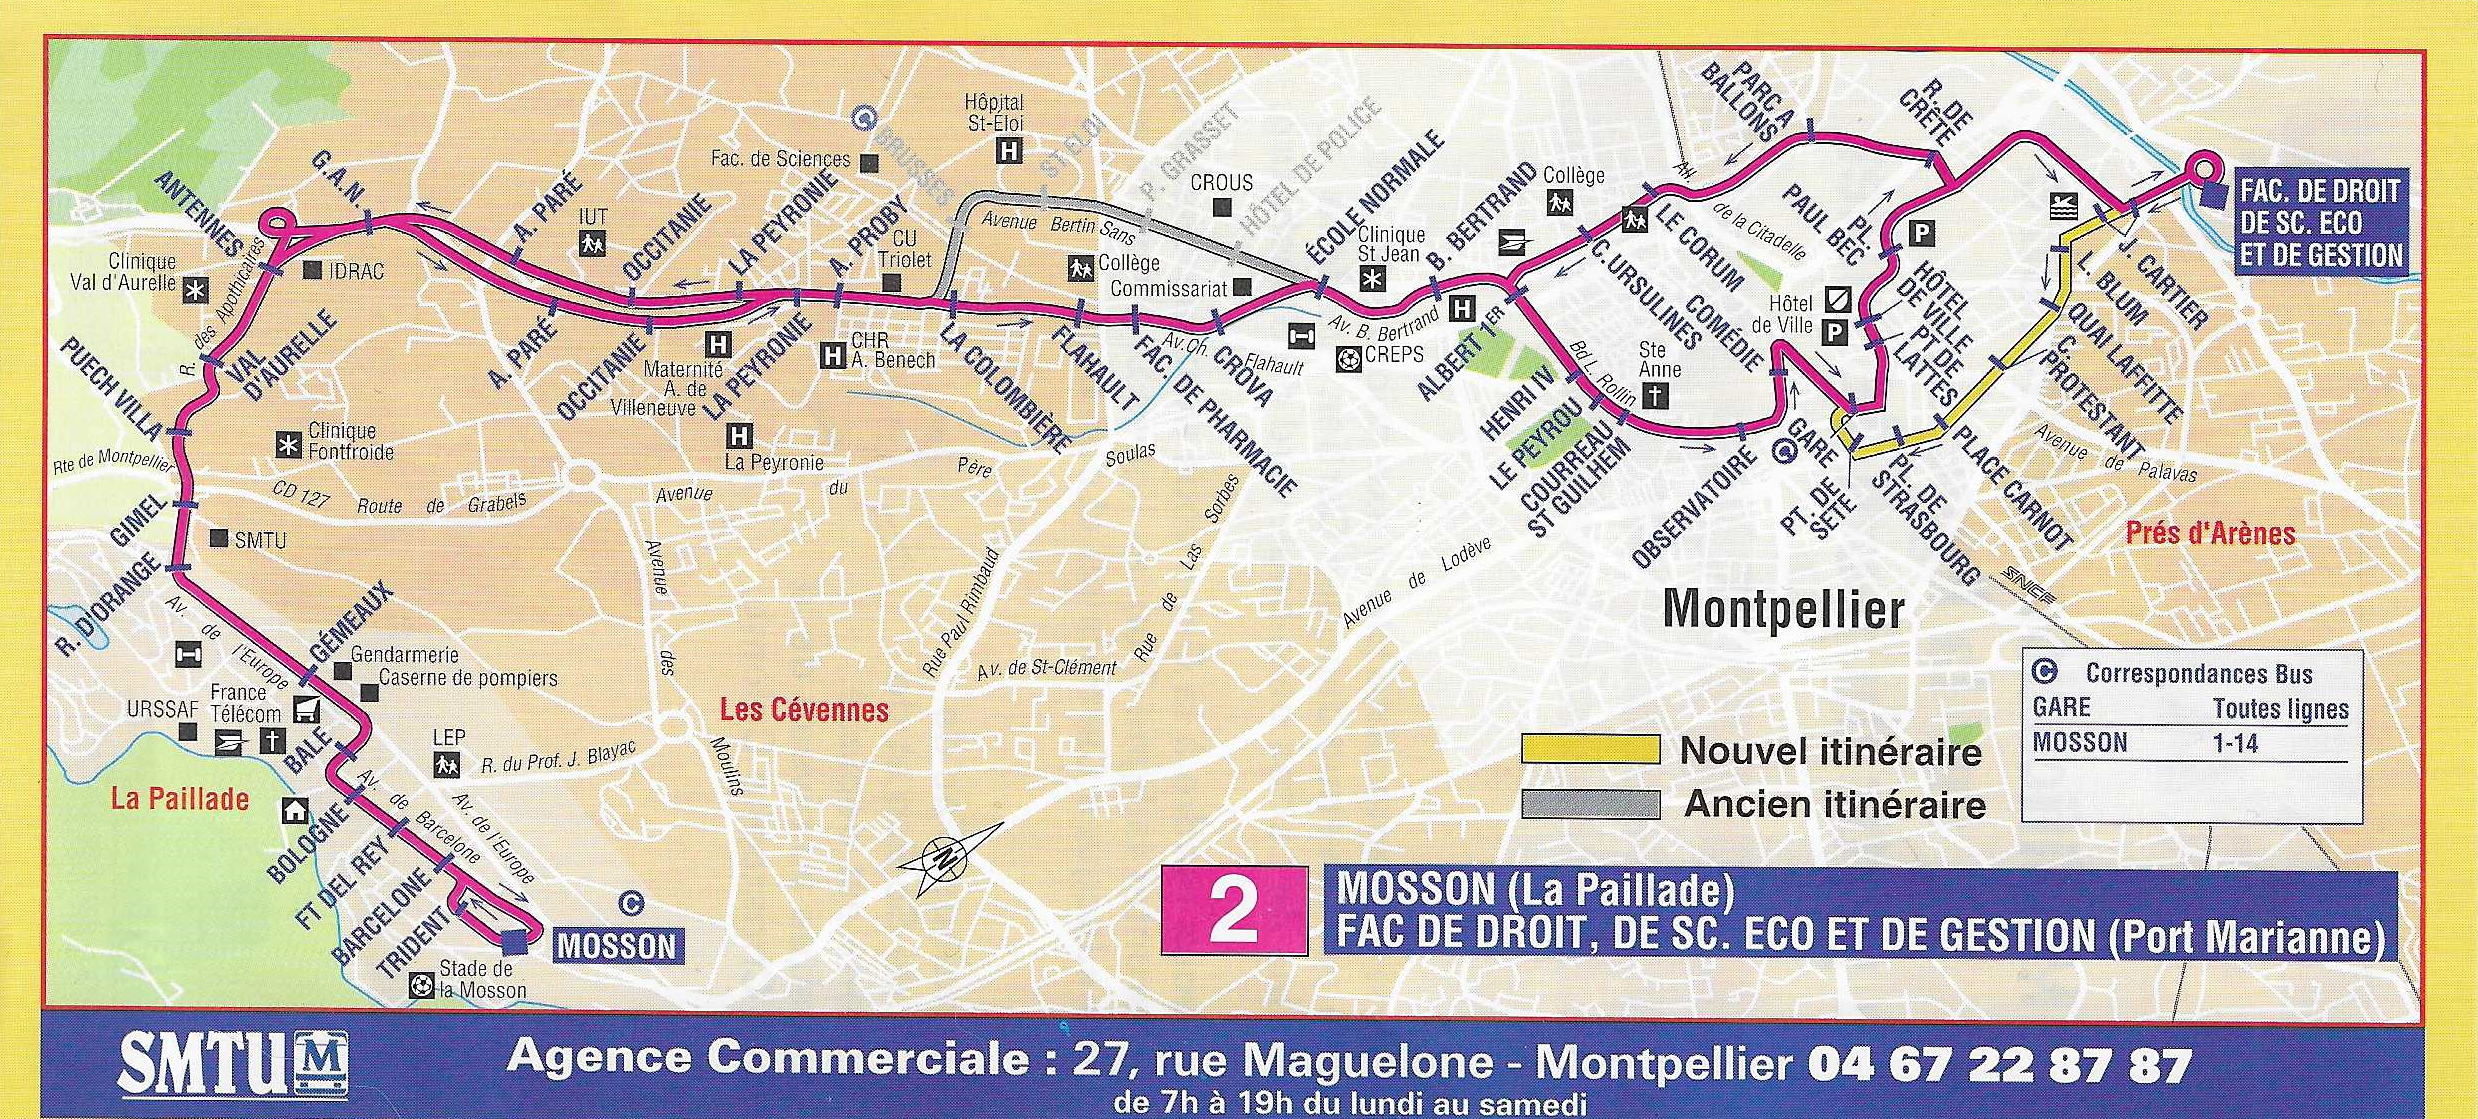 Ligne 2 à partir du 16 juillet 1998. Source : document SMTU